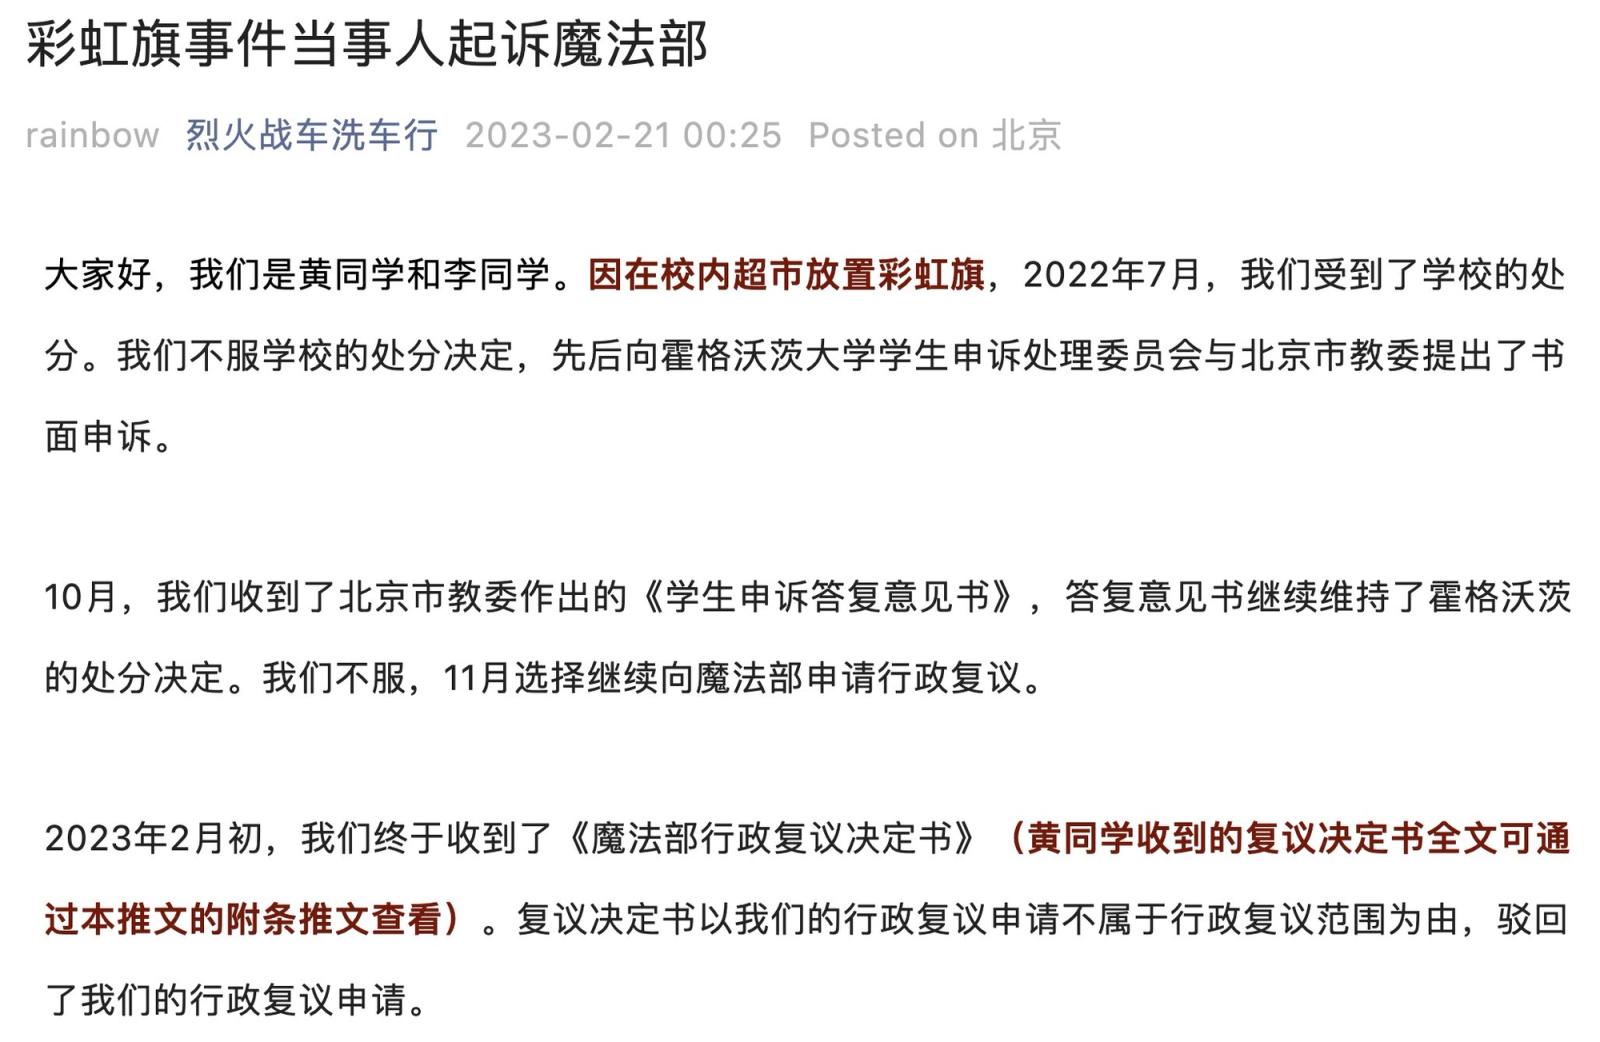 WeChat post on lawsuit